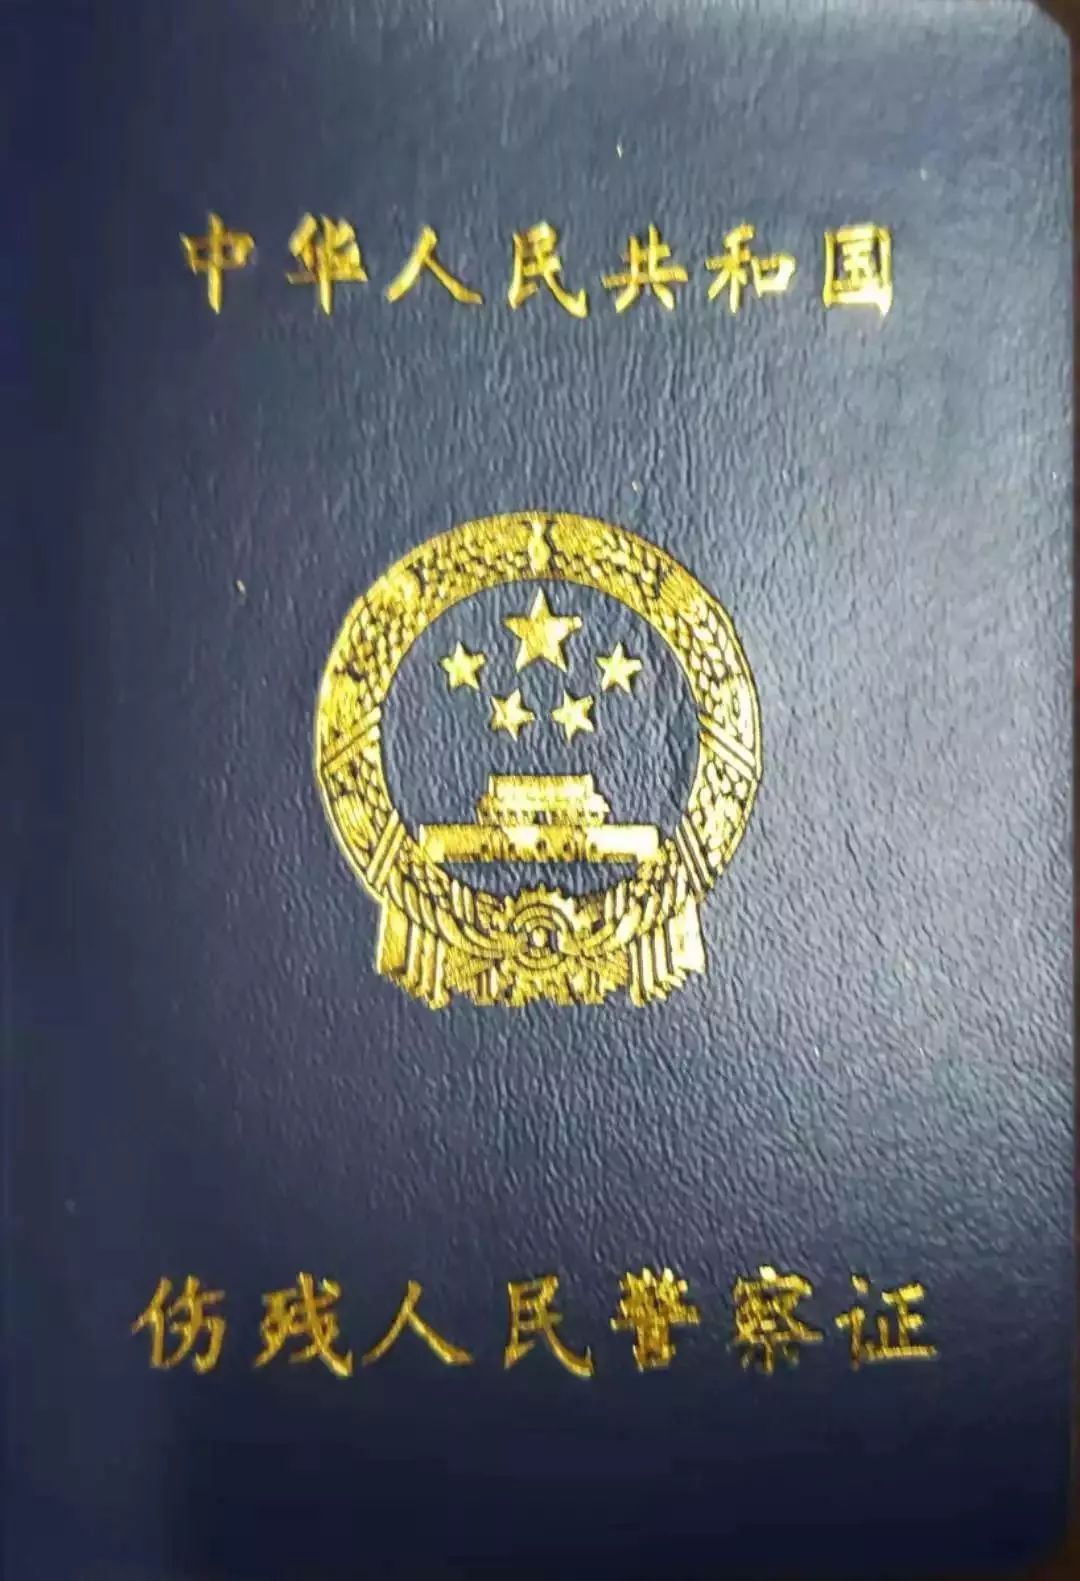 8月起全国统一换发《残疾军人证》等证件-新闻发布-中华人民共和国退役军人事务部